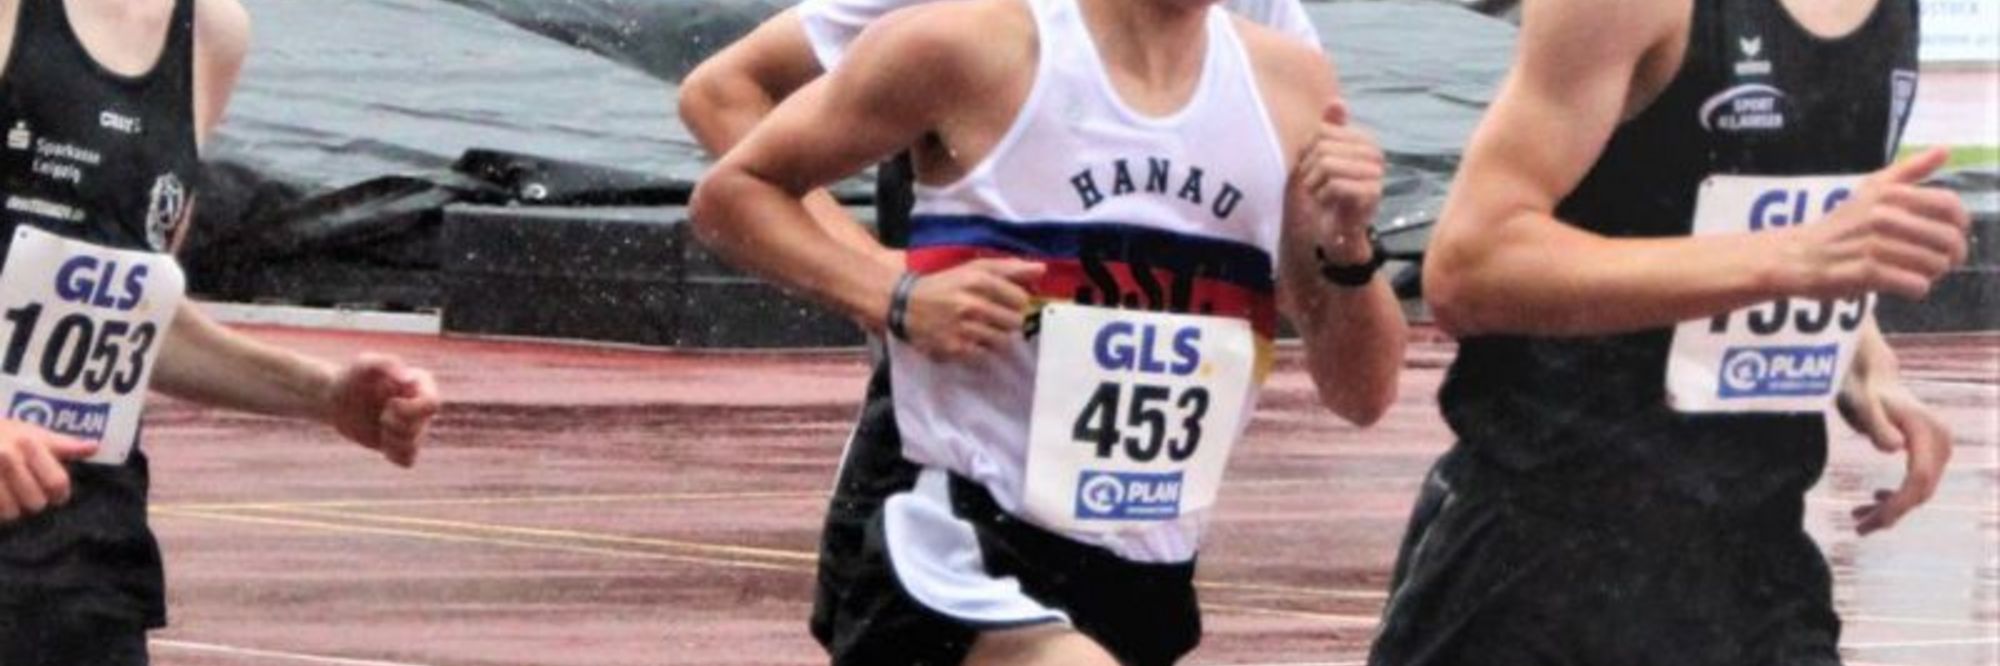 Tristan Kaufhold Deutscher Jugendmeister im 1500m-Lauf